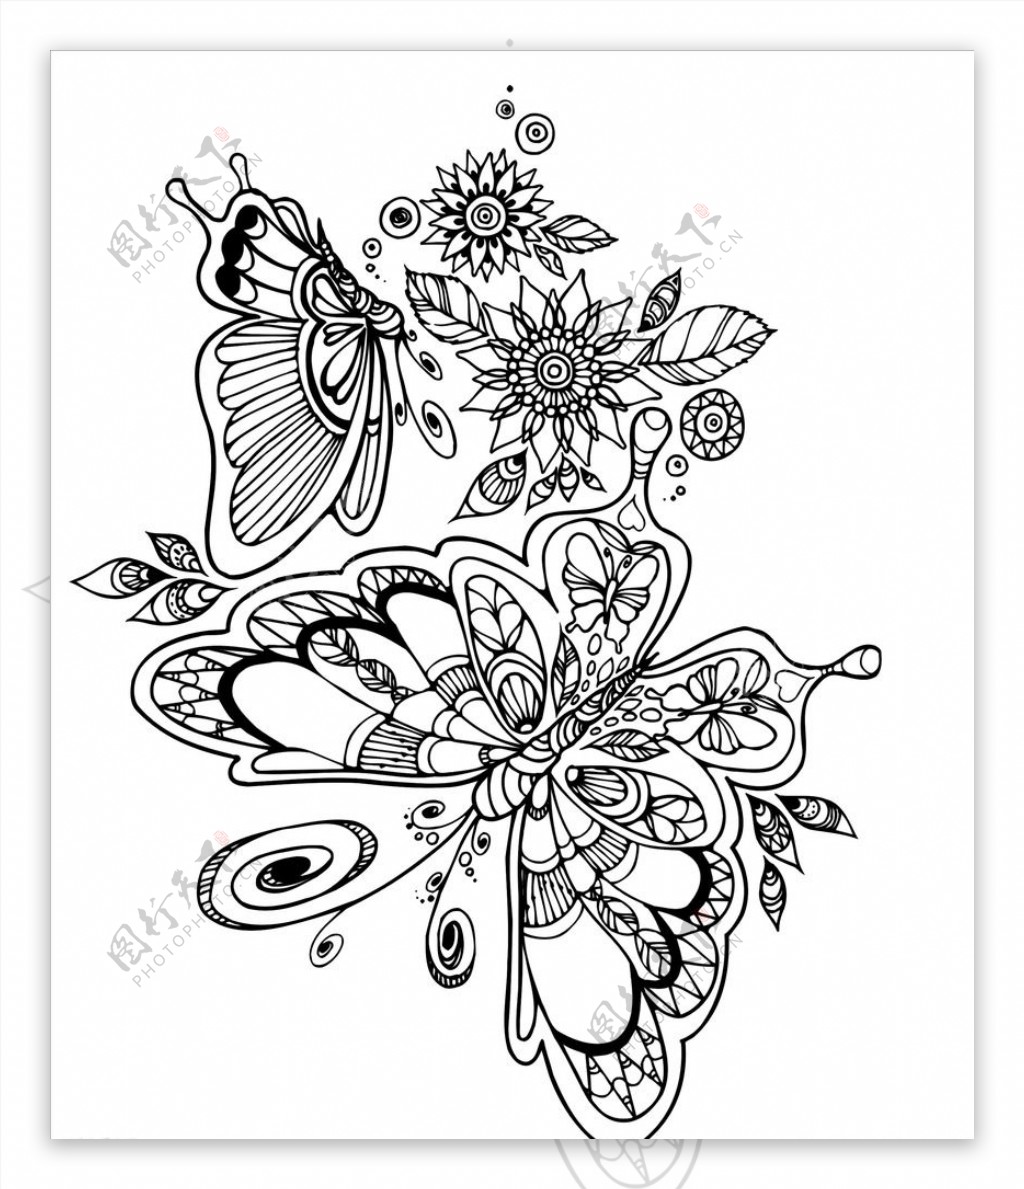 黑白花朵蝴蝶复杂剪纸底纹图片